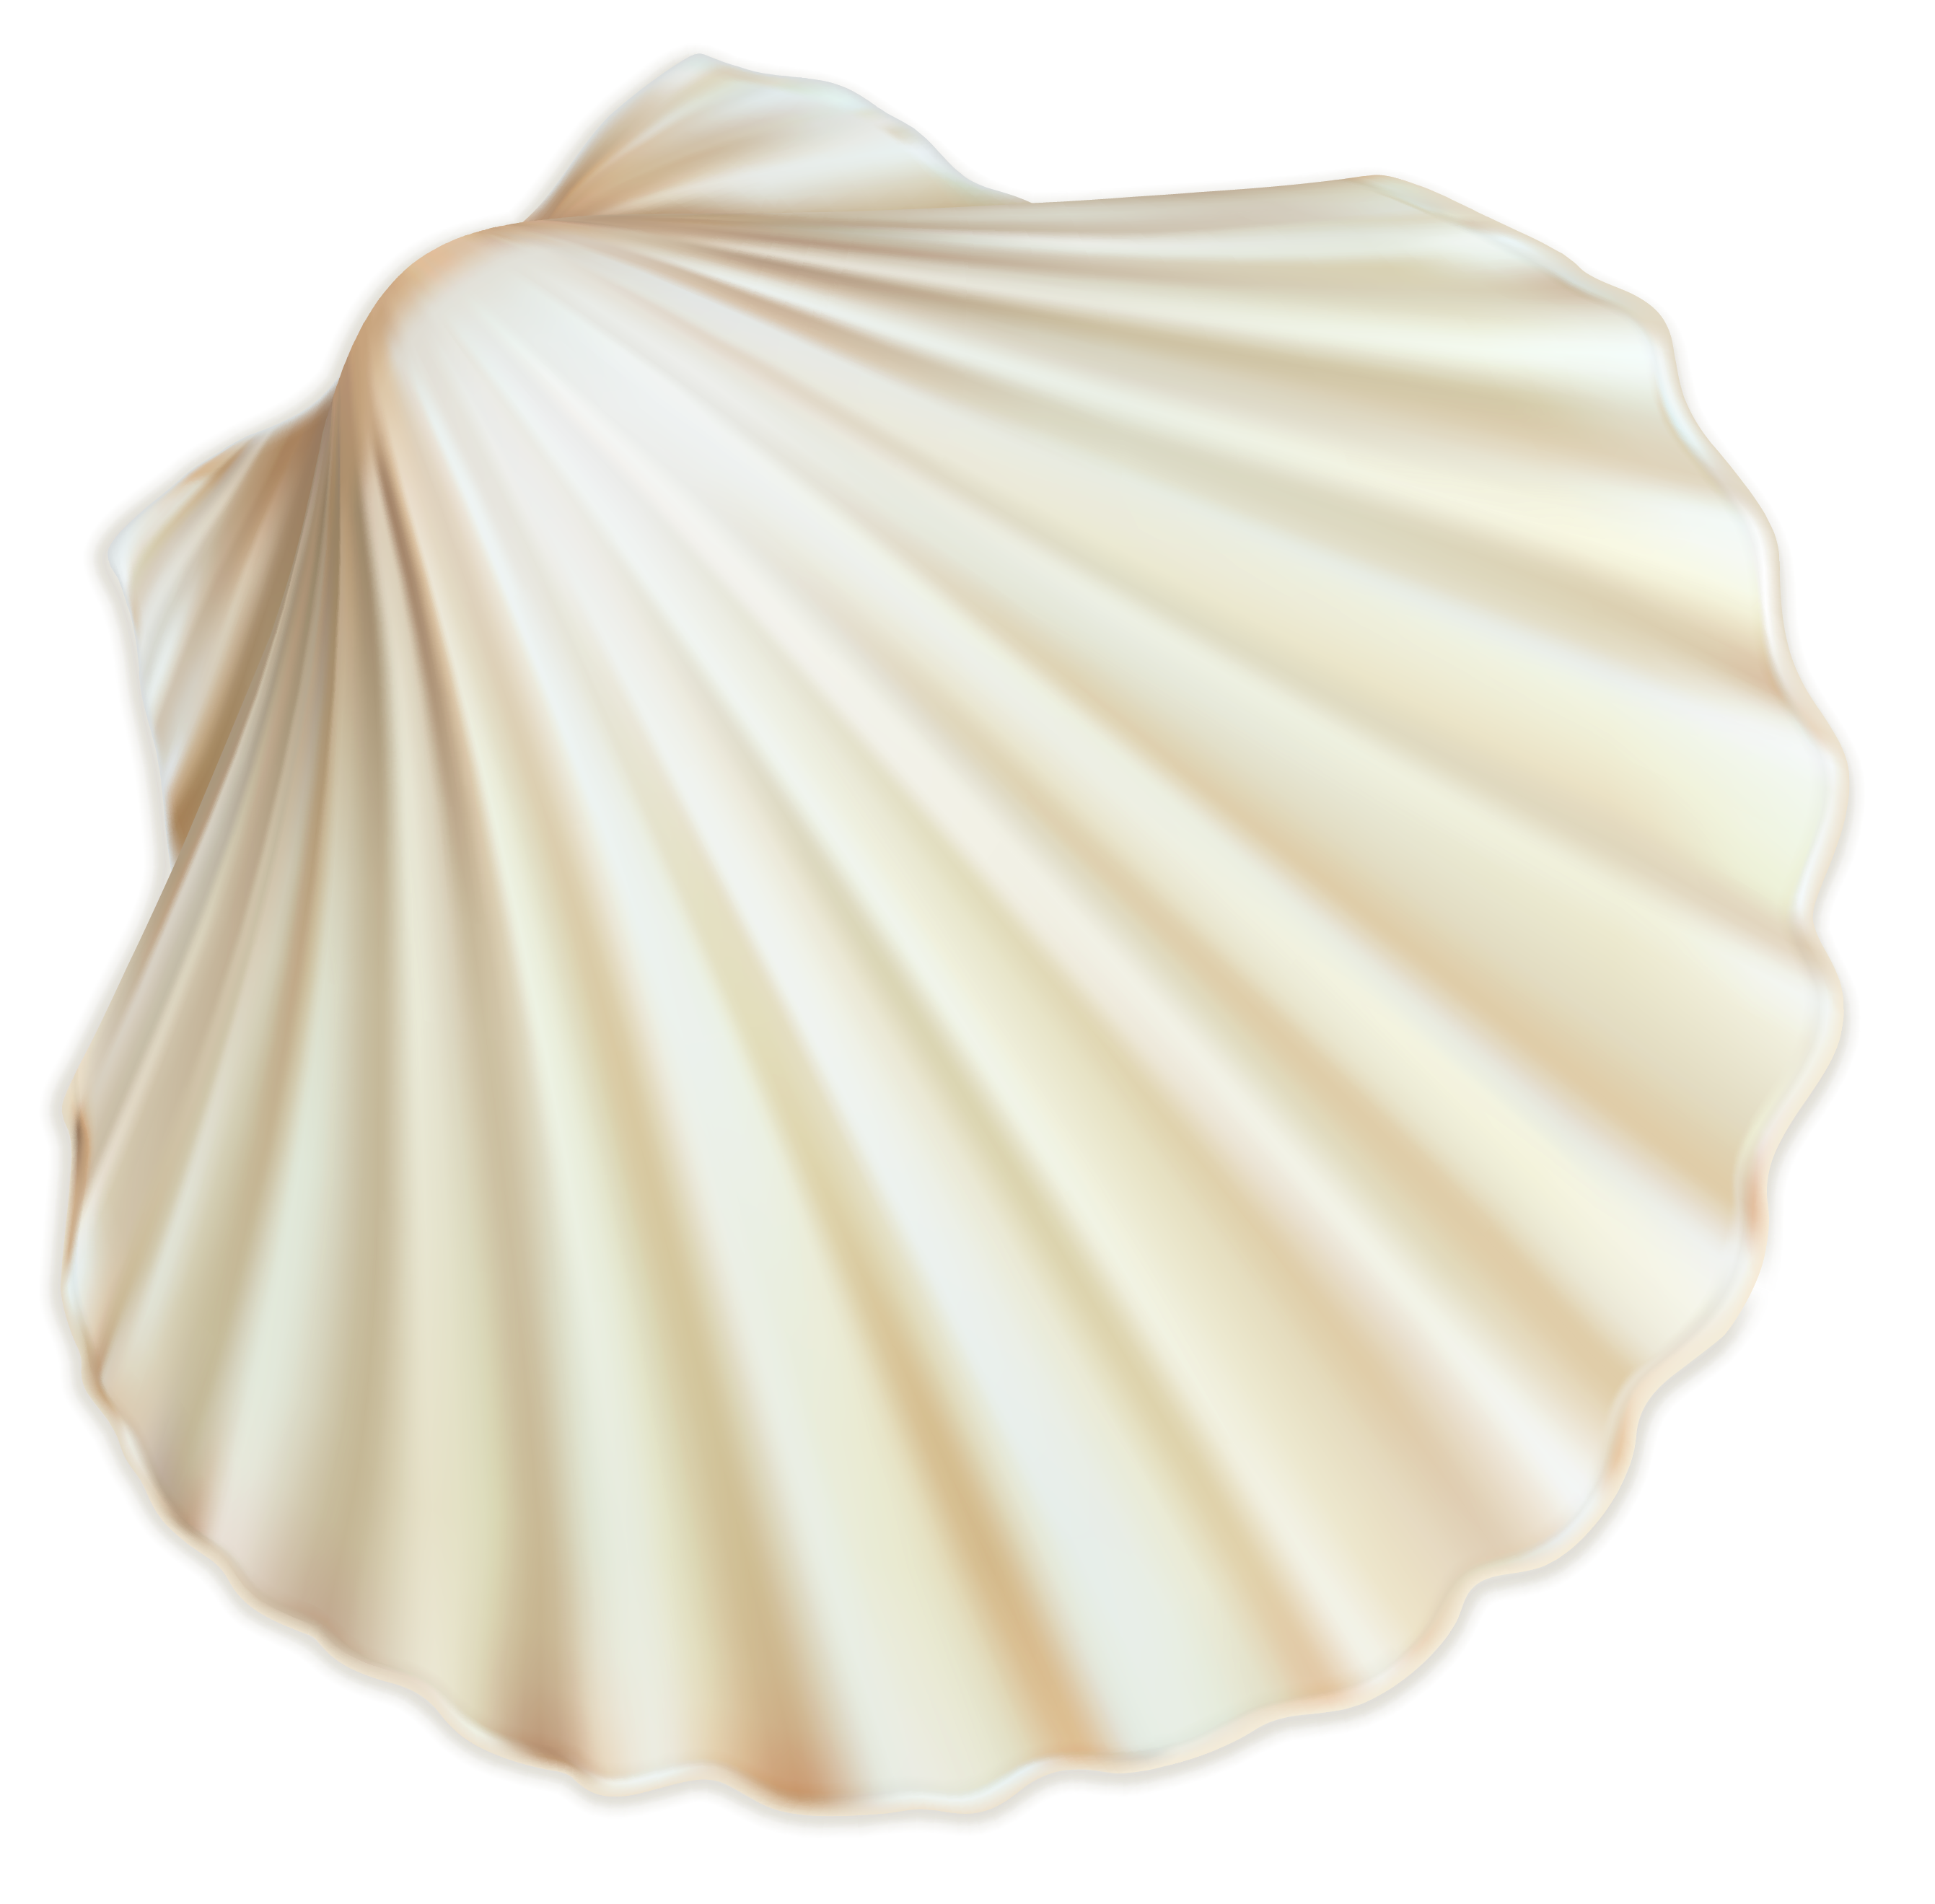 Shell Restaurant Seashell Spiral Sea White Trust Clipart